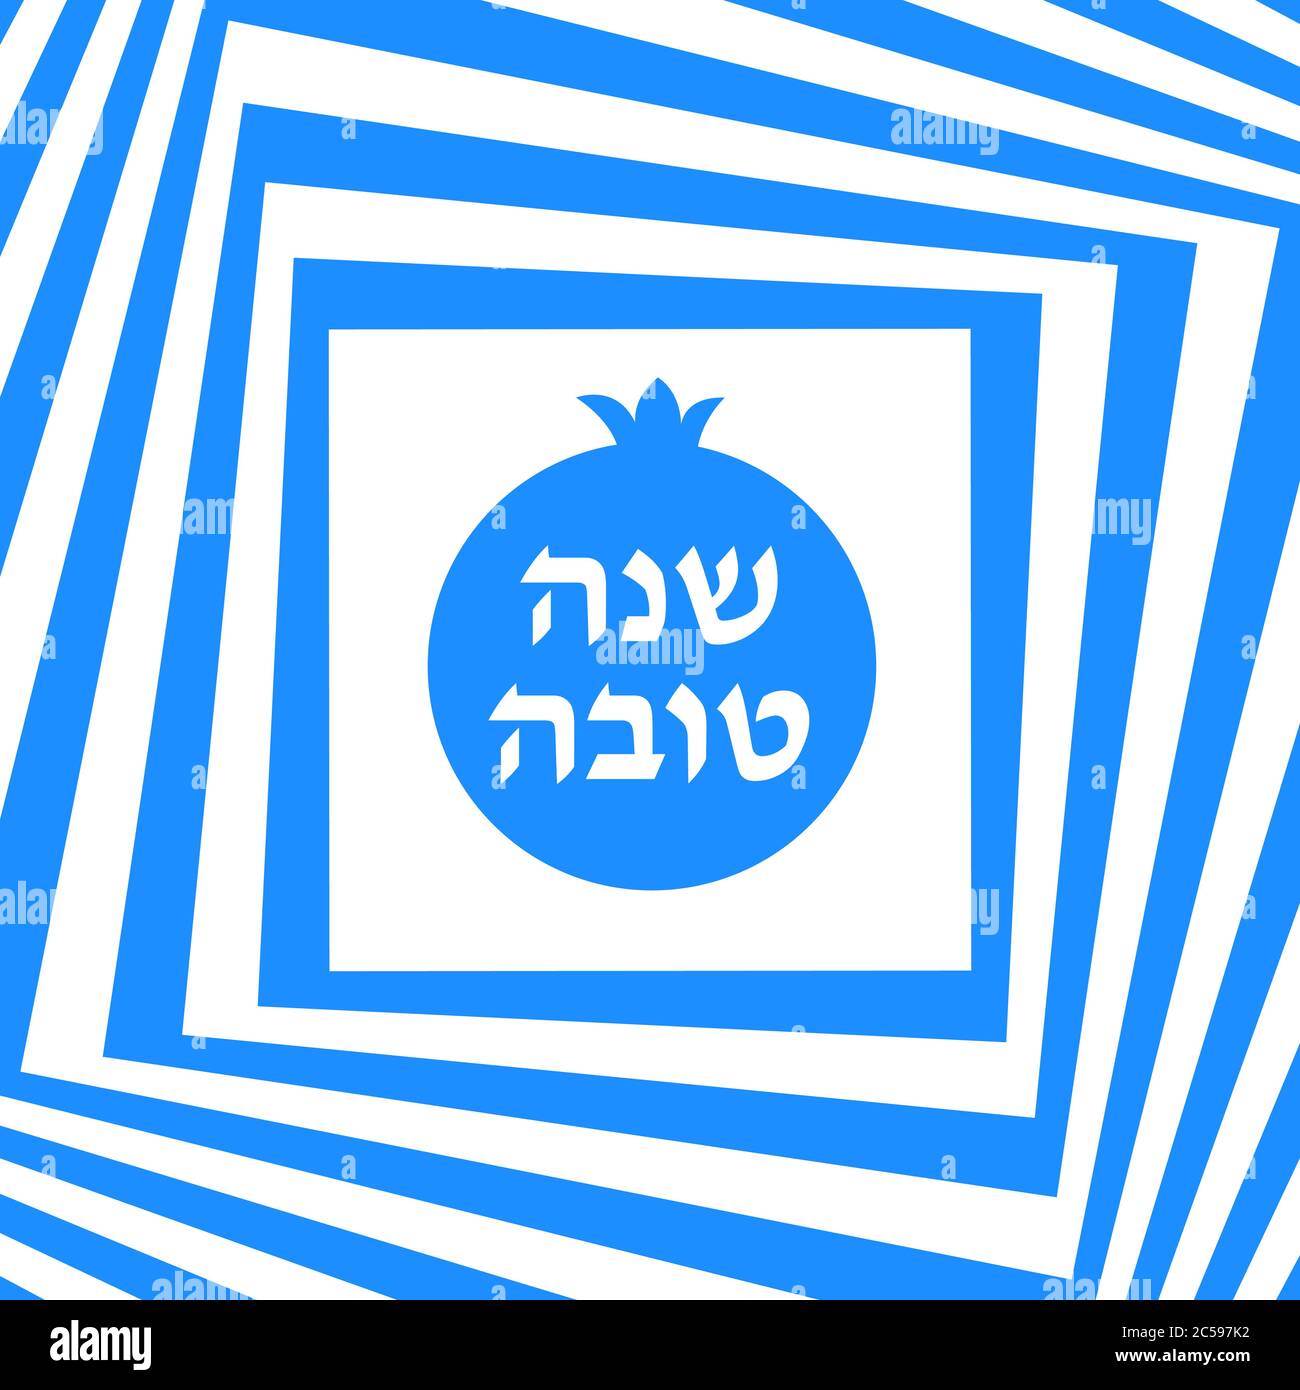 Tarjeta de felicitación Rosh hashana - ilustración vectorial del año Nuevo Judío. Patrón geométrico abstracto y icono de Granada. Saludo texto Shana tova en hebreo Ilustración del Vector